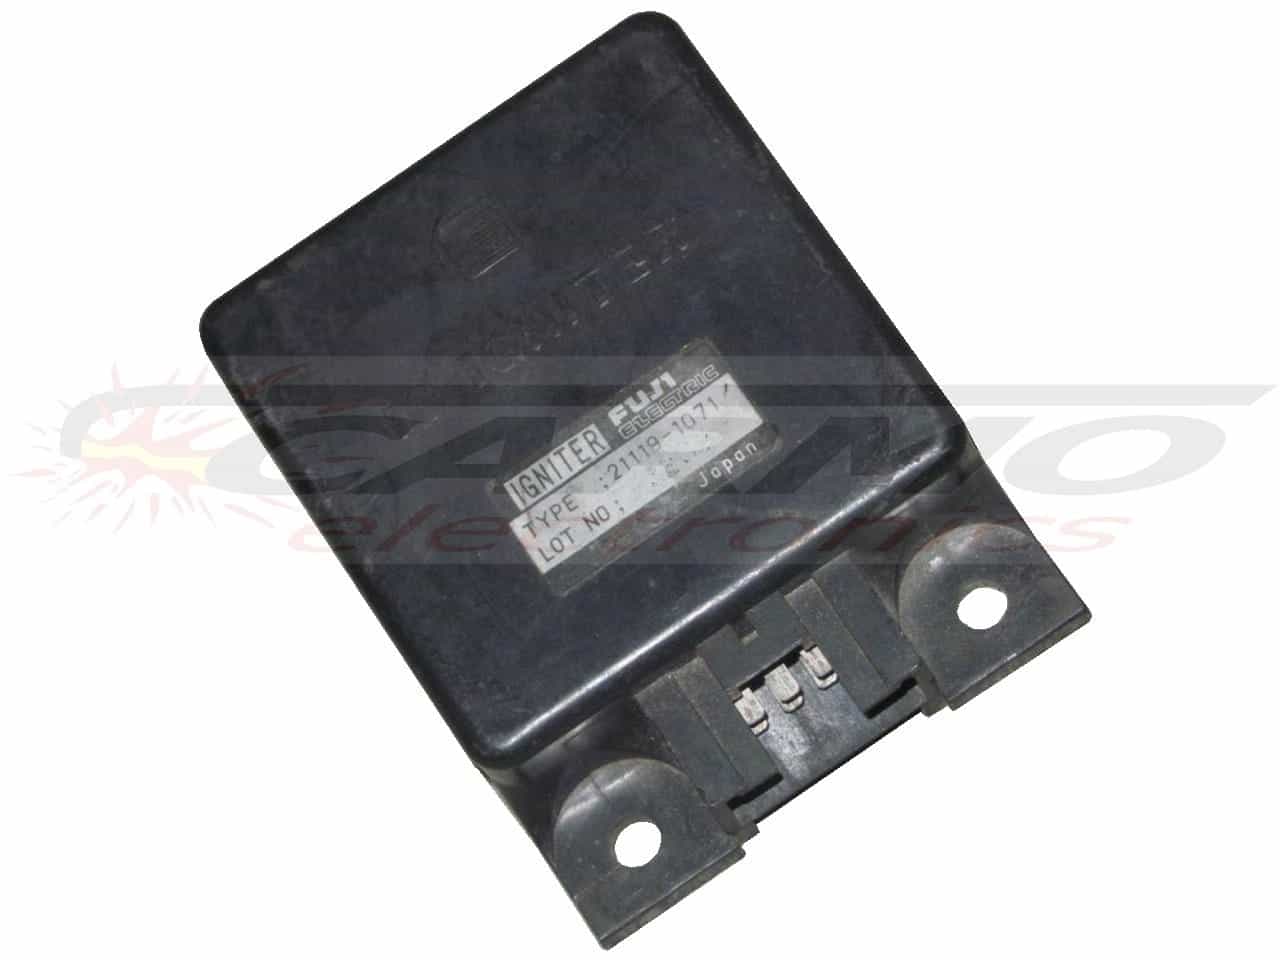 GPZ1100 unitrack (21119-1071) igniter ignition module CDI TCI Box